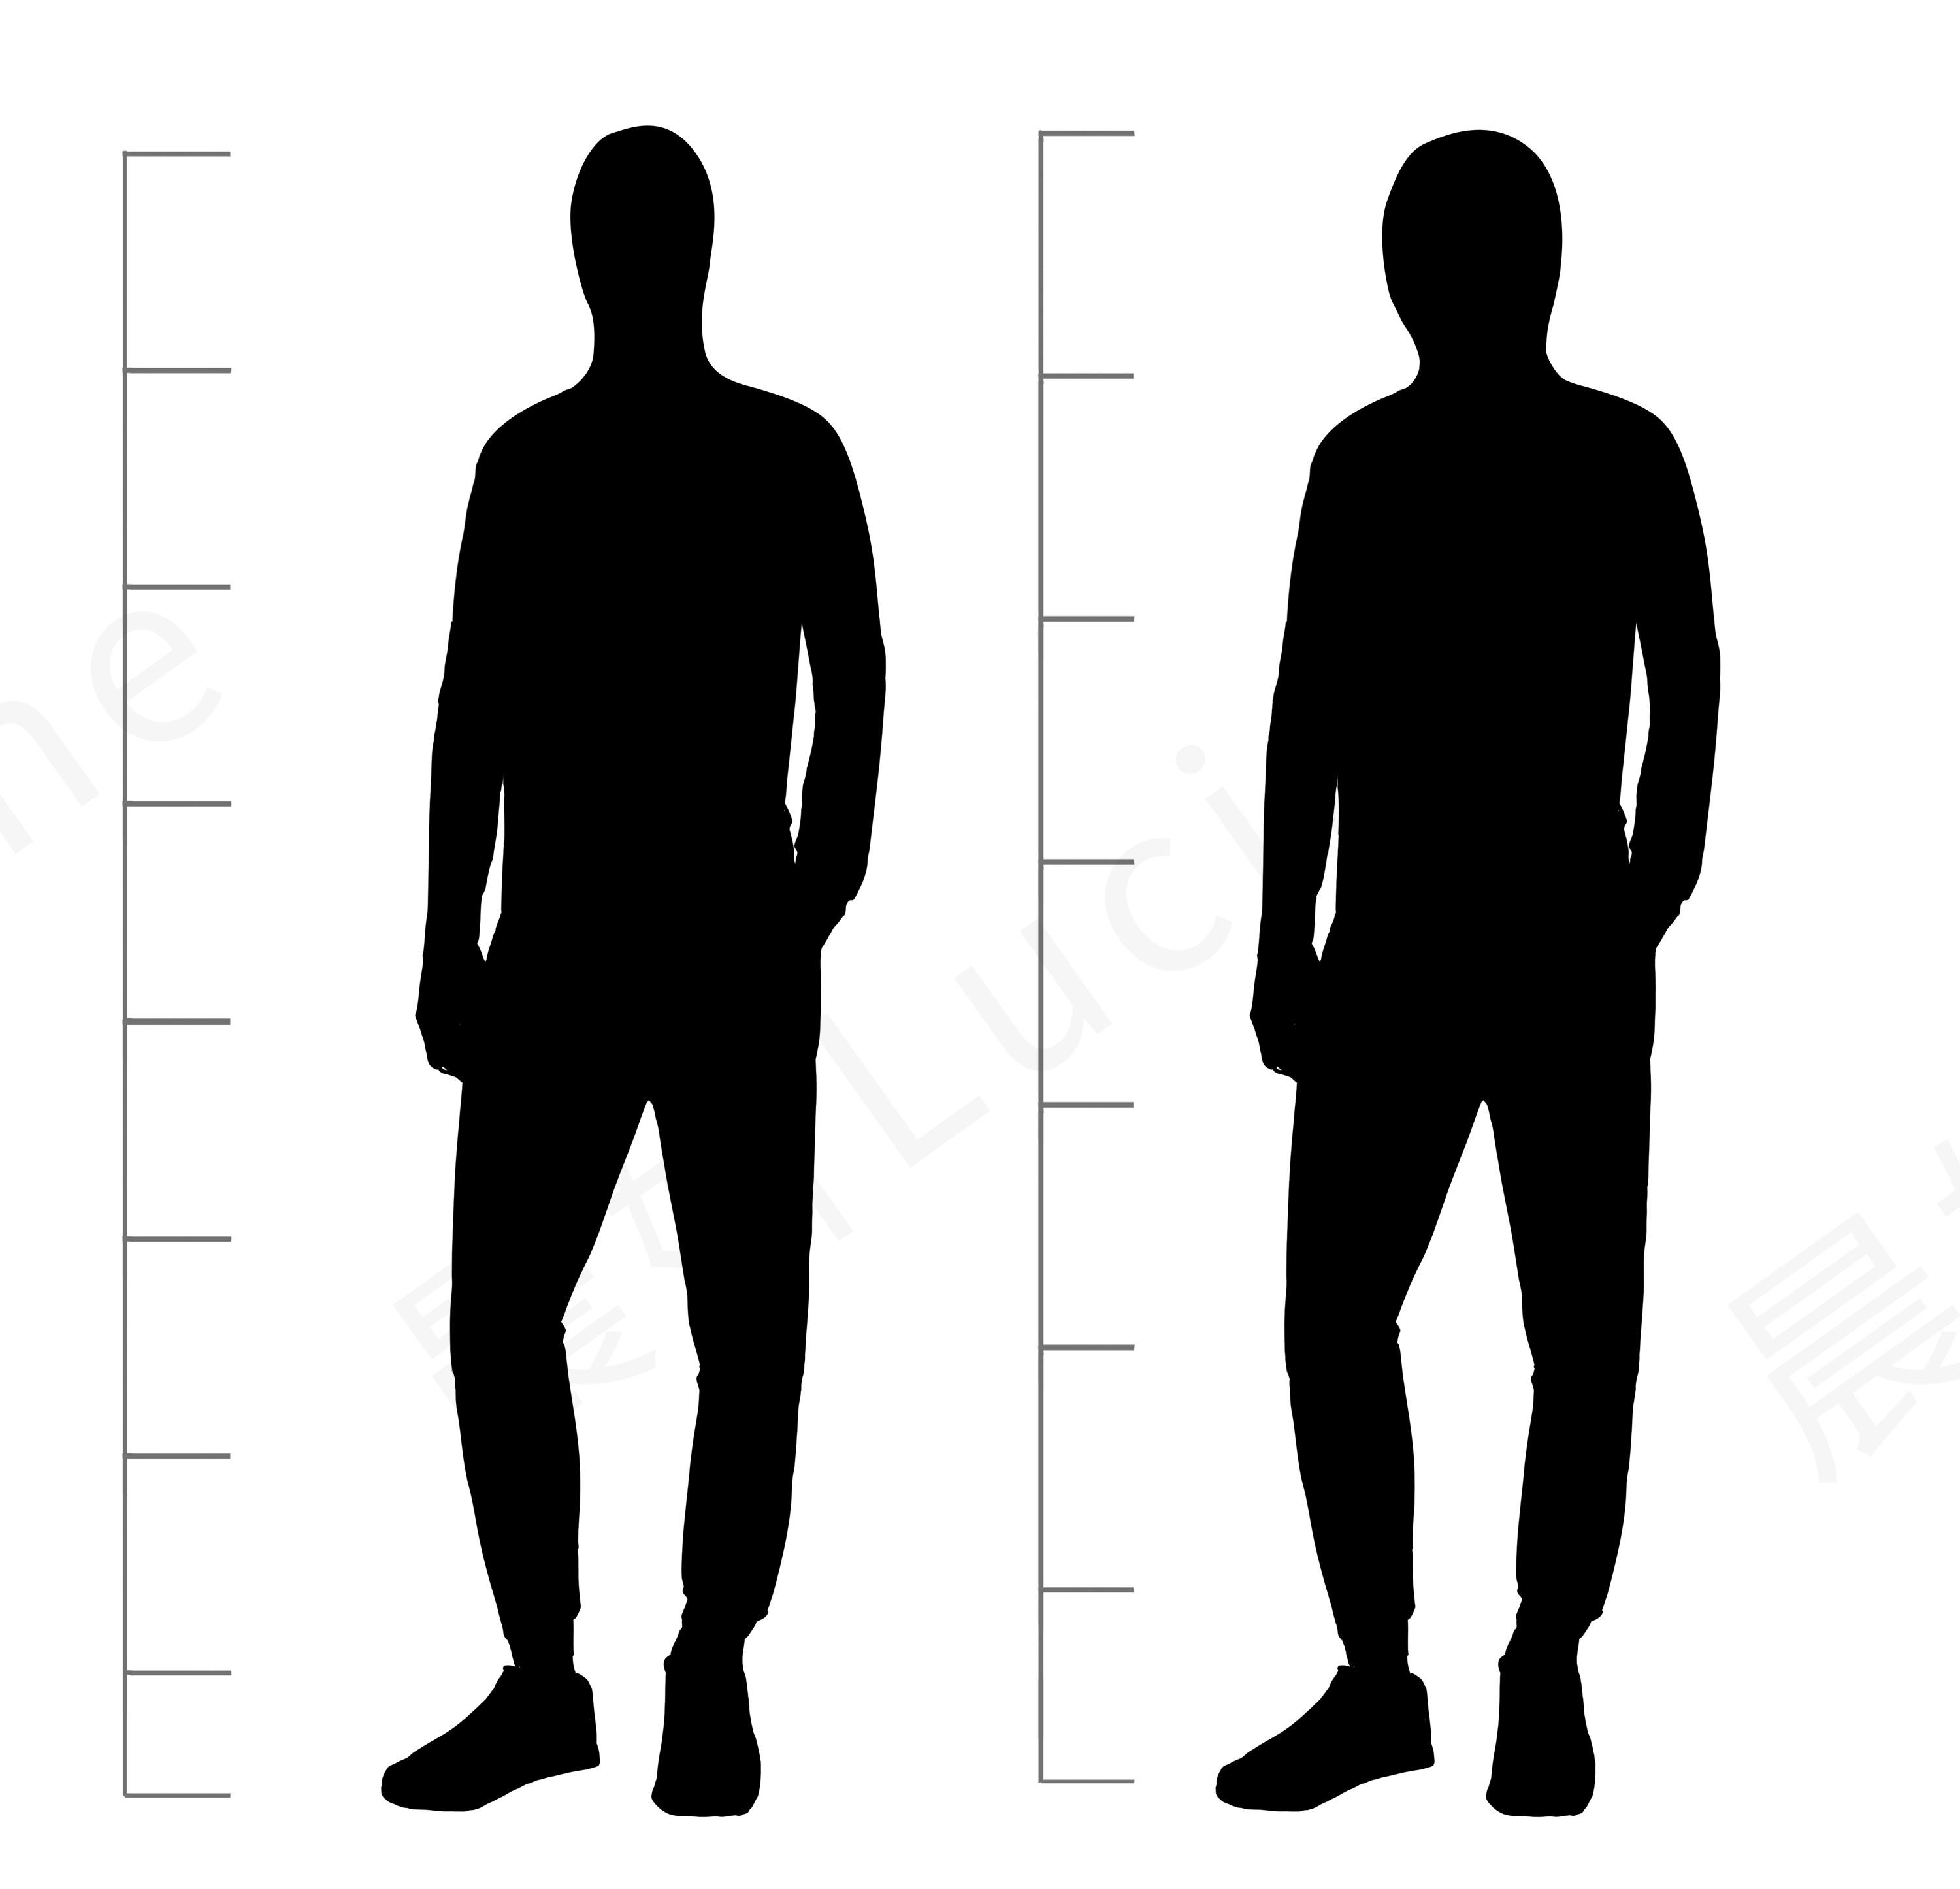 两个影子的身高相同,大多数人第一眼认为左边更高